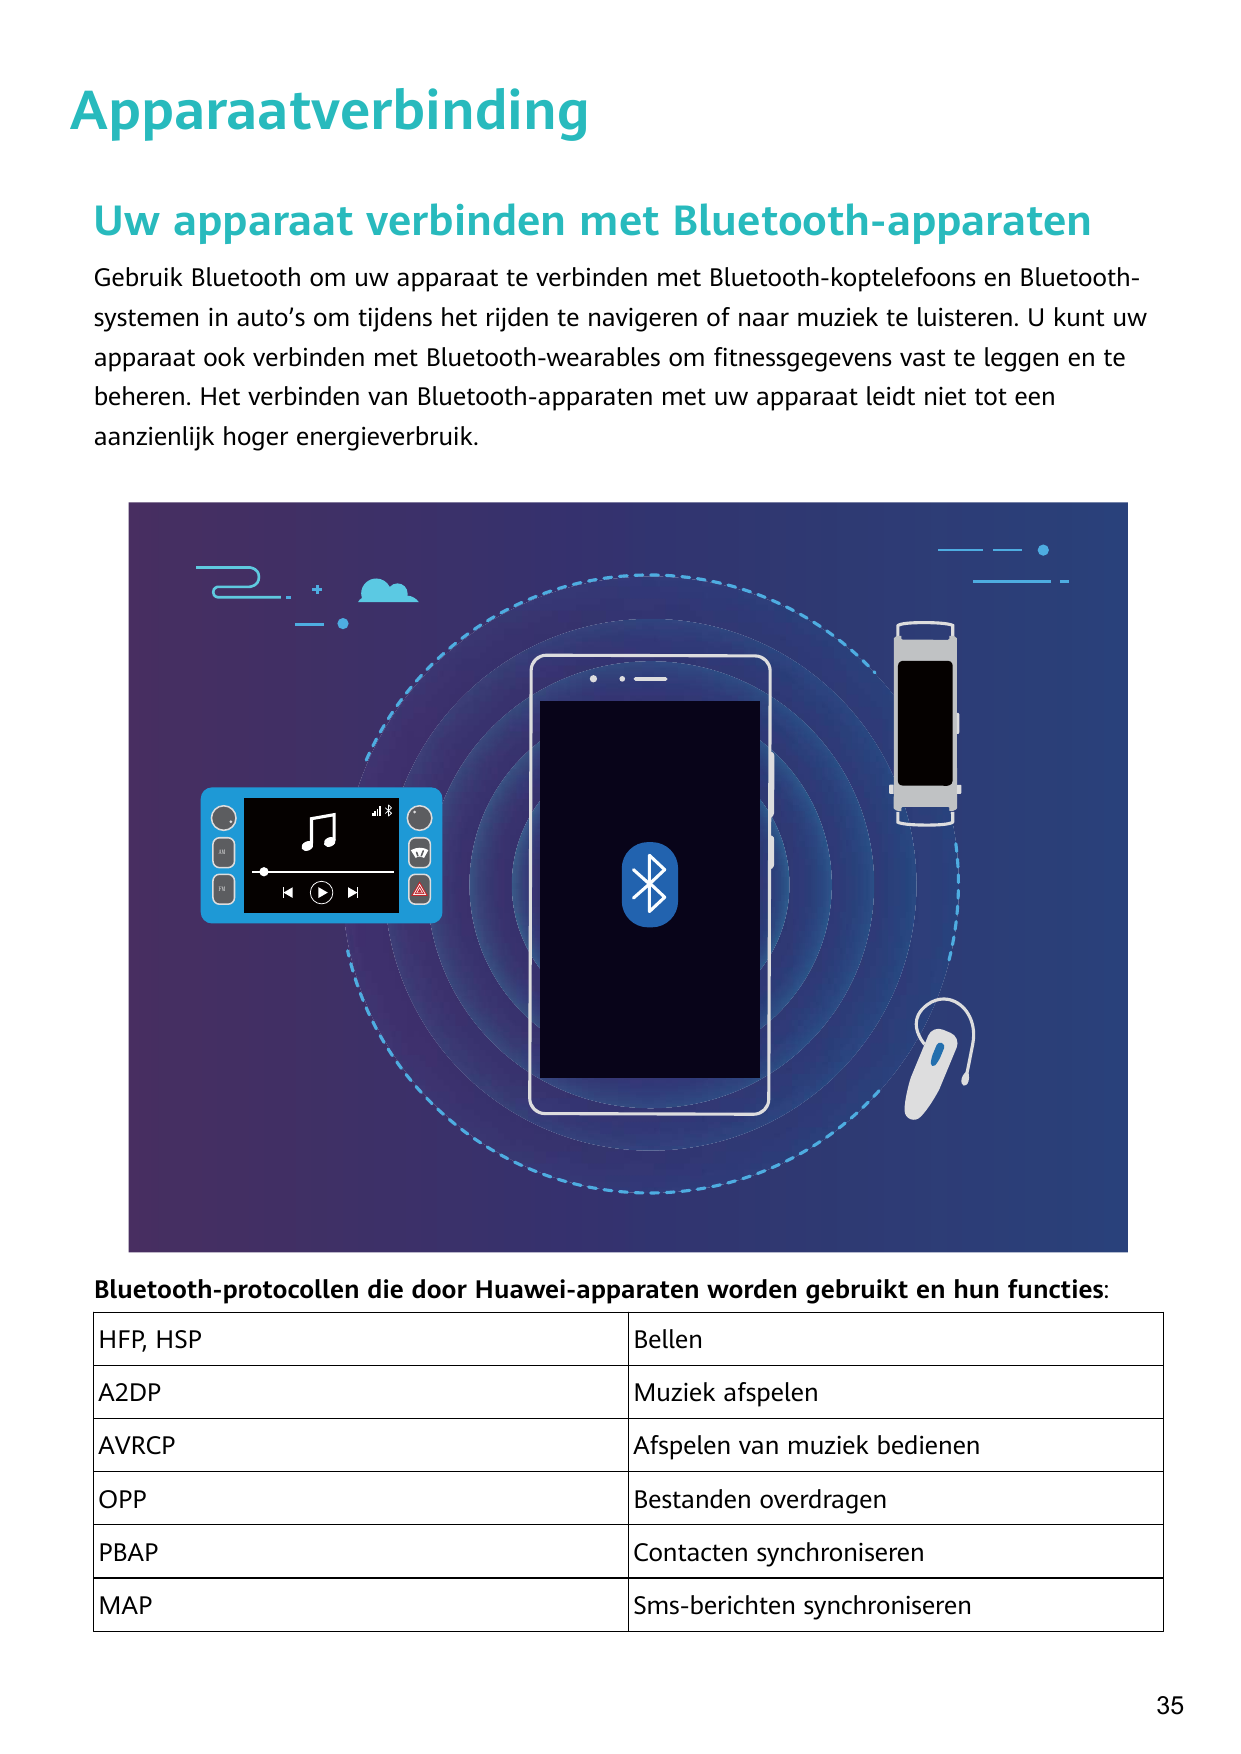 ApparaatverbindingUw apparaat verbinden met Bluetooth-apparatenGebruik Bluetooth om uw apparaat te verbinden met Bluetooth-kopte